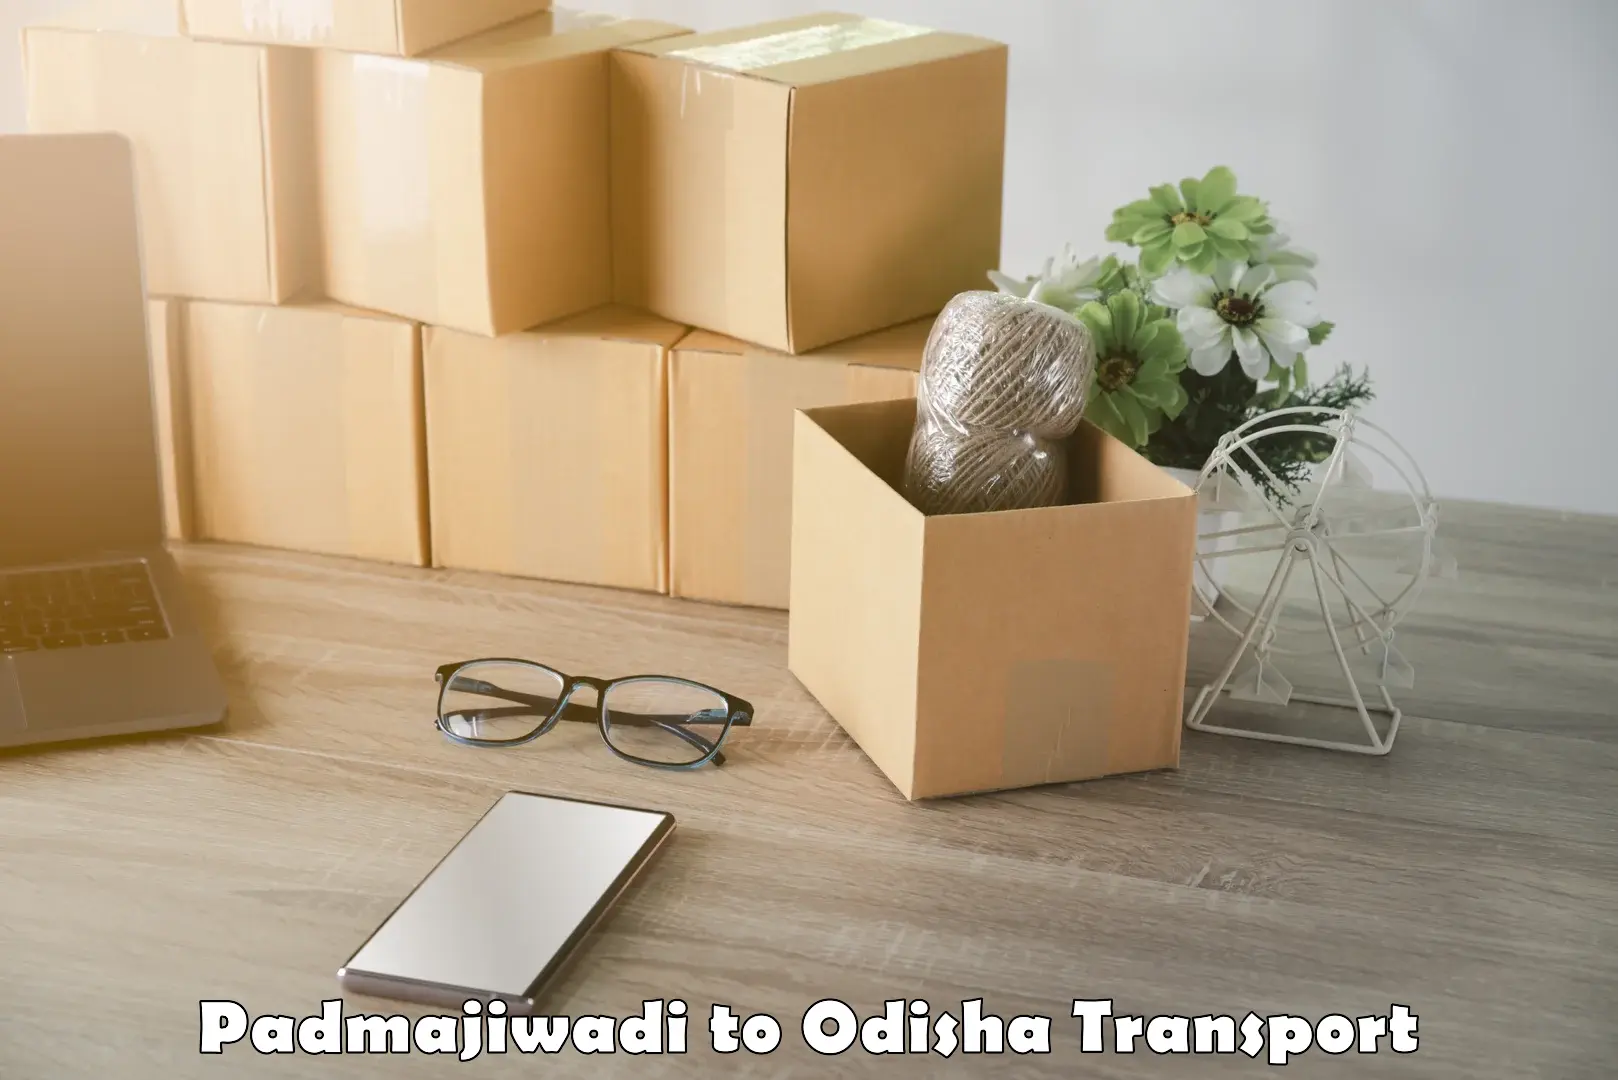 Logistics transportation services Padmajiwadi to Baleswar